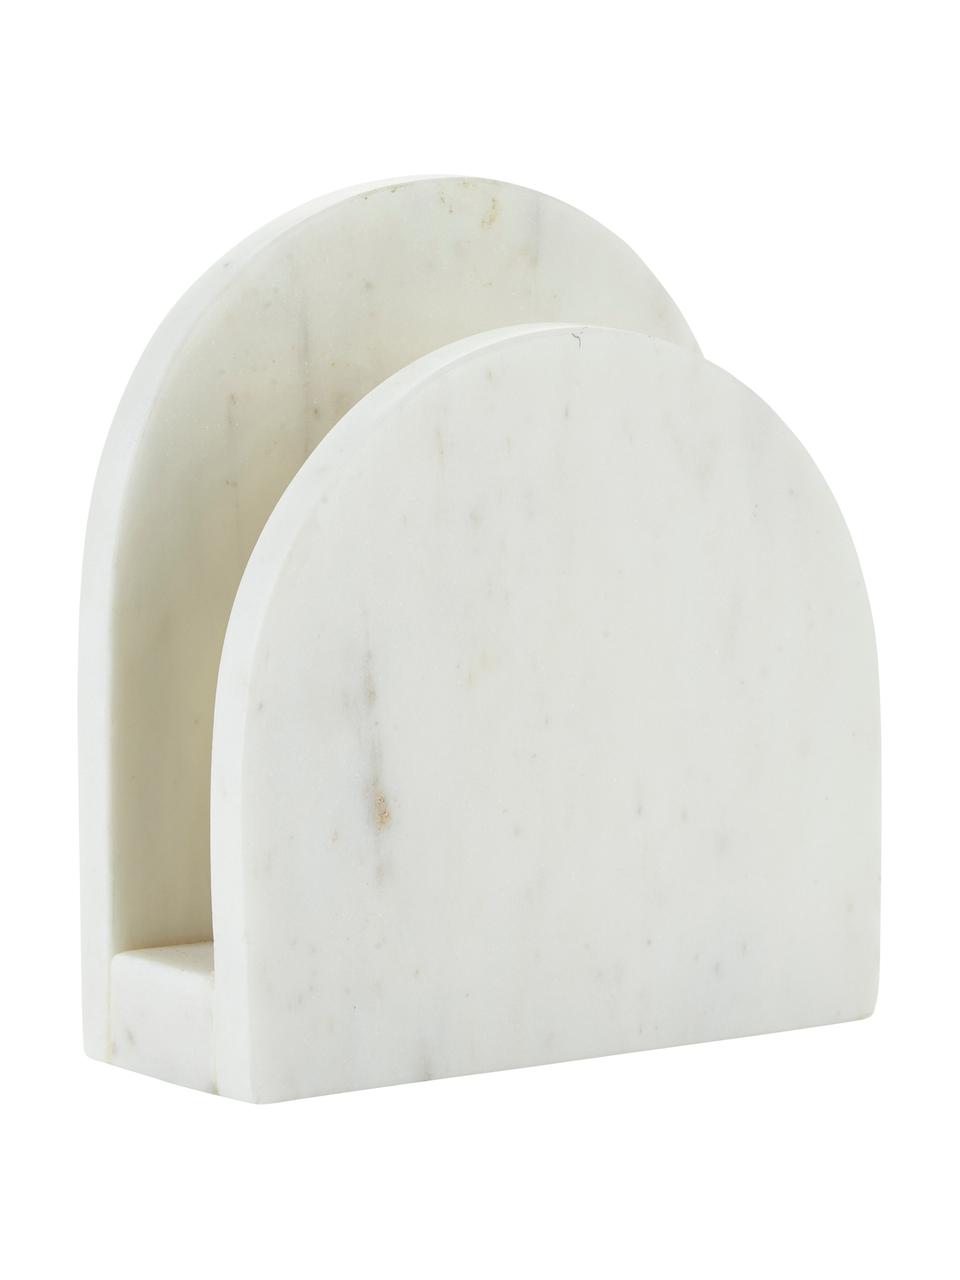 Stojak na serwetki z marmuru Charlton, Marmur, Biały, S 15 x W 14 cm